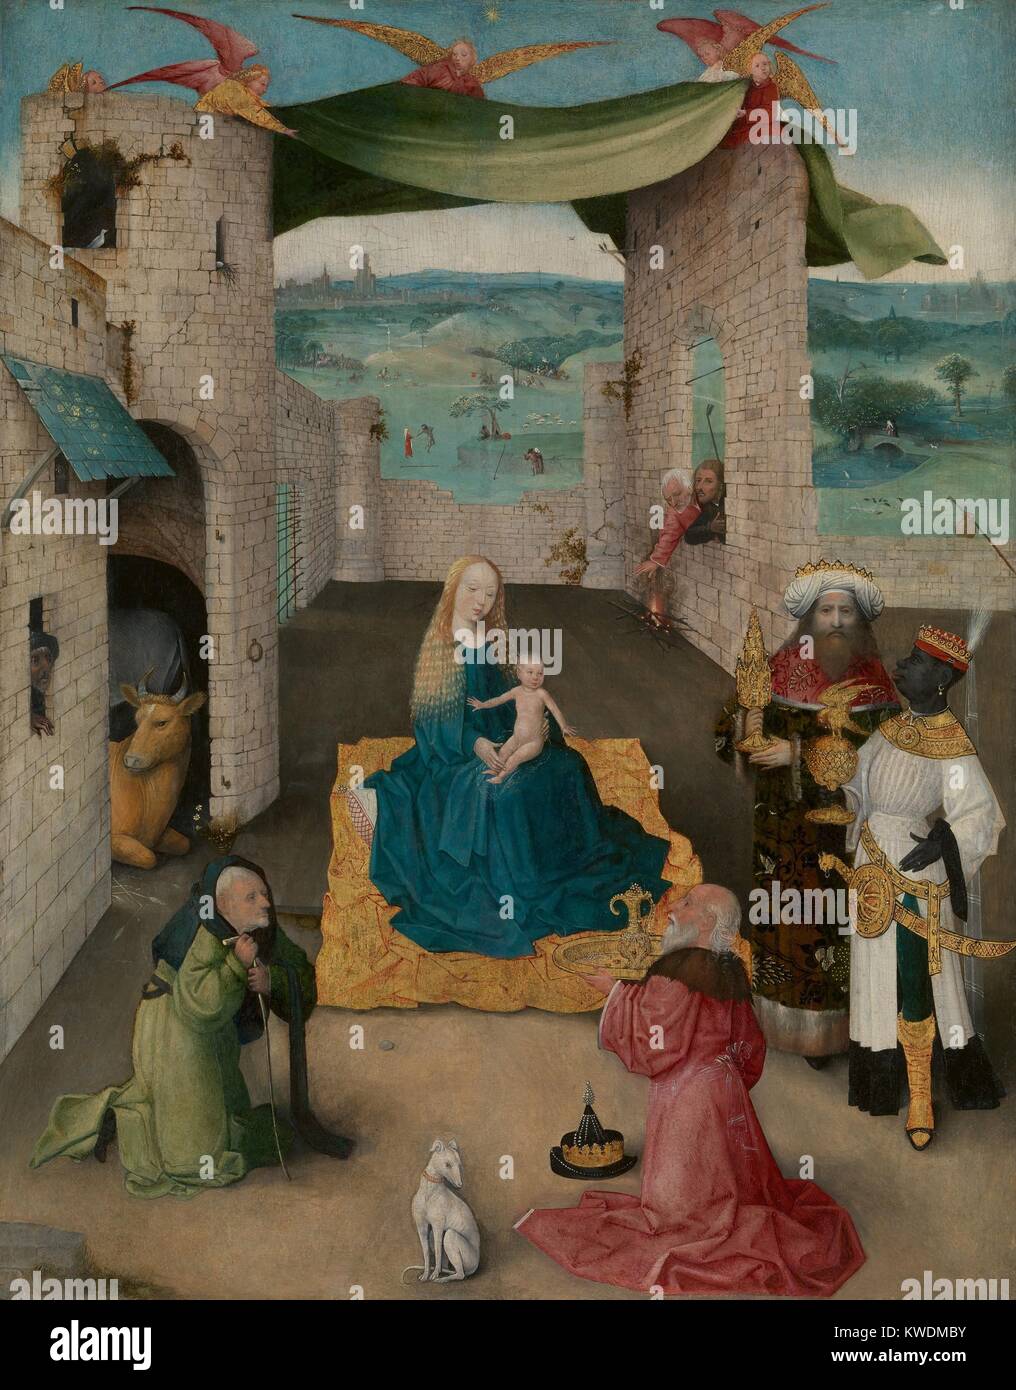 L Adorazione dei Magi, da Hieronymus Bosch, 1475, Netherlandish, nel nord della pittura rinascimentale. L Adorazione dei Magi è presentata in una fase-come impostazione con una tenda detenute aloft dagli angeli. I Magi Baltharzar, tradizionalmente descritti come studioso babilonese, è raffigurato come un uomo nero. Gli eserciti marzo nel paesaggio di sfondo (BSLOC 2017 16 96) Foto Stock